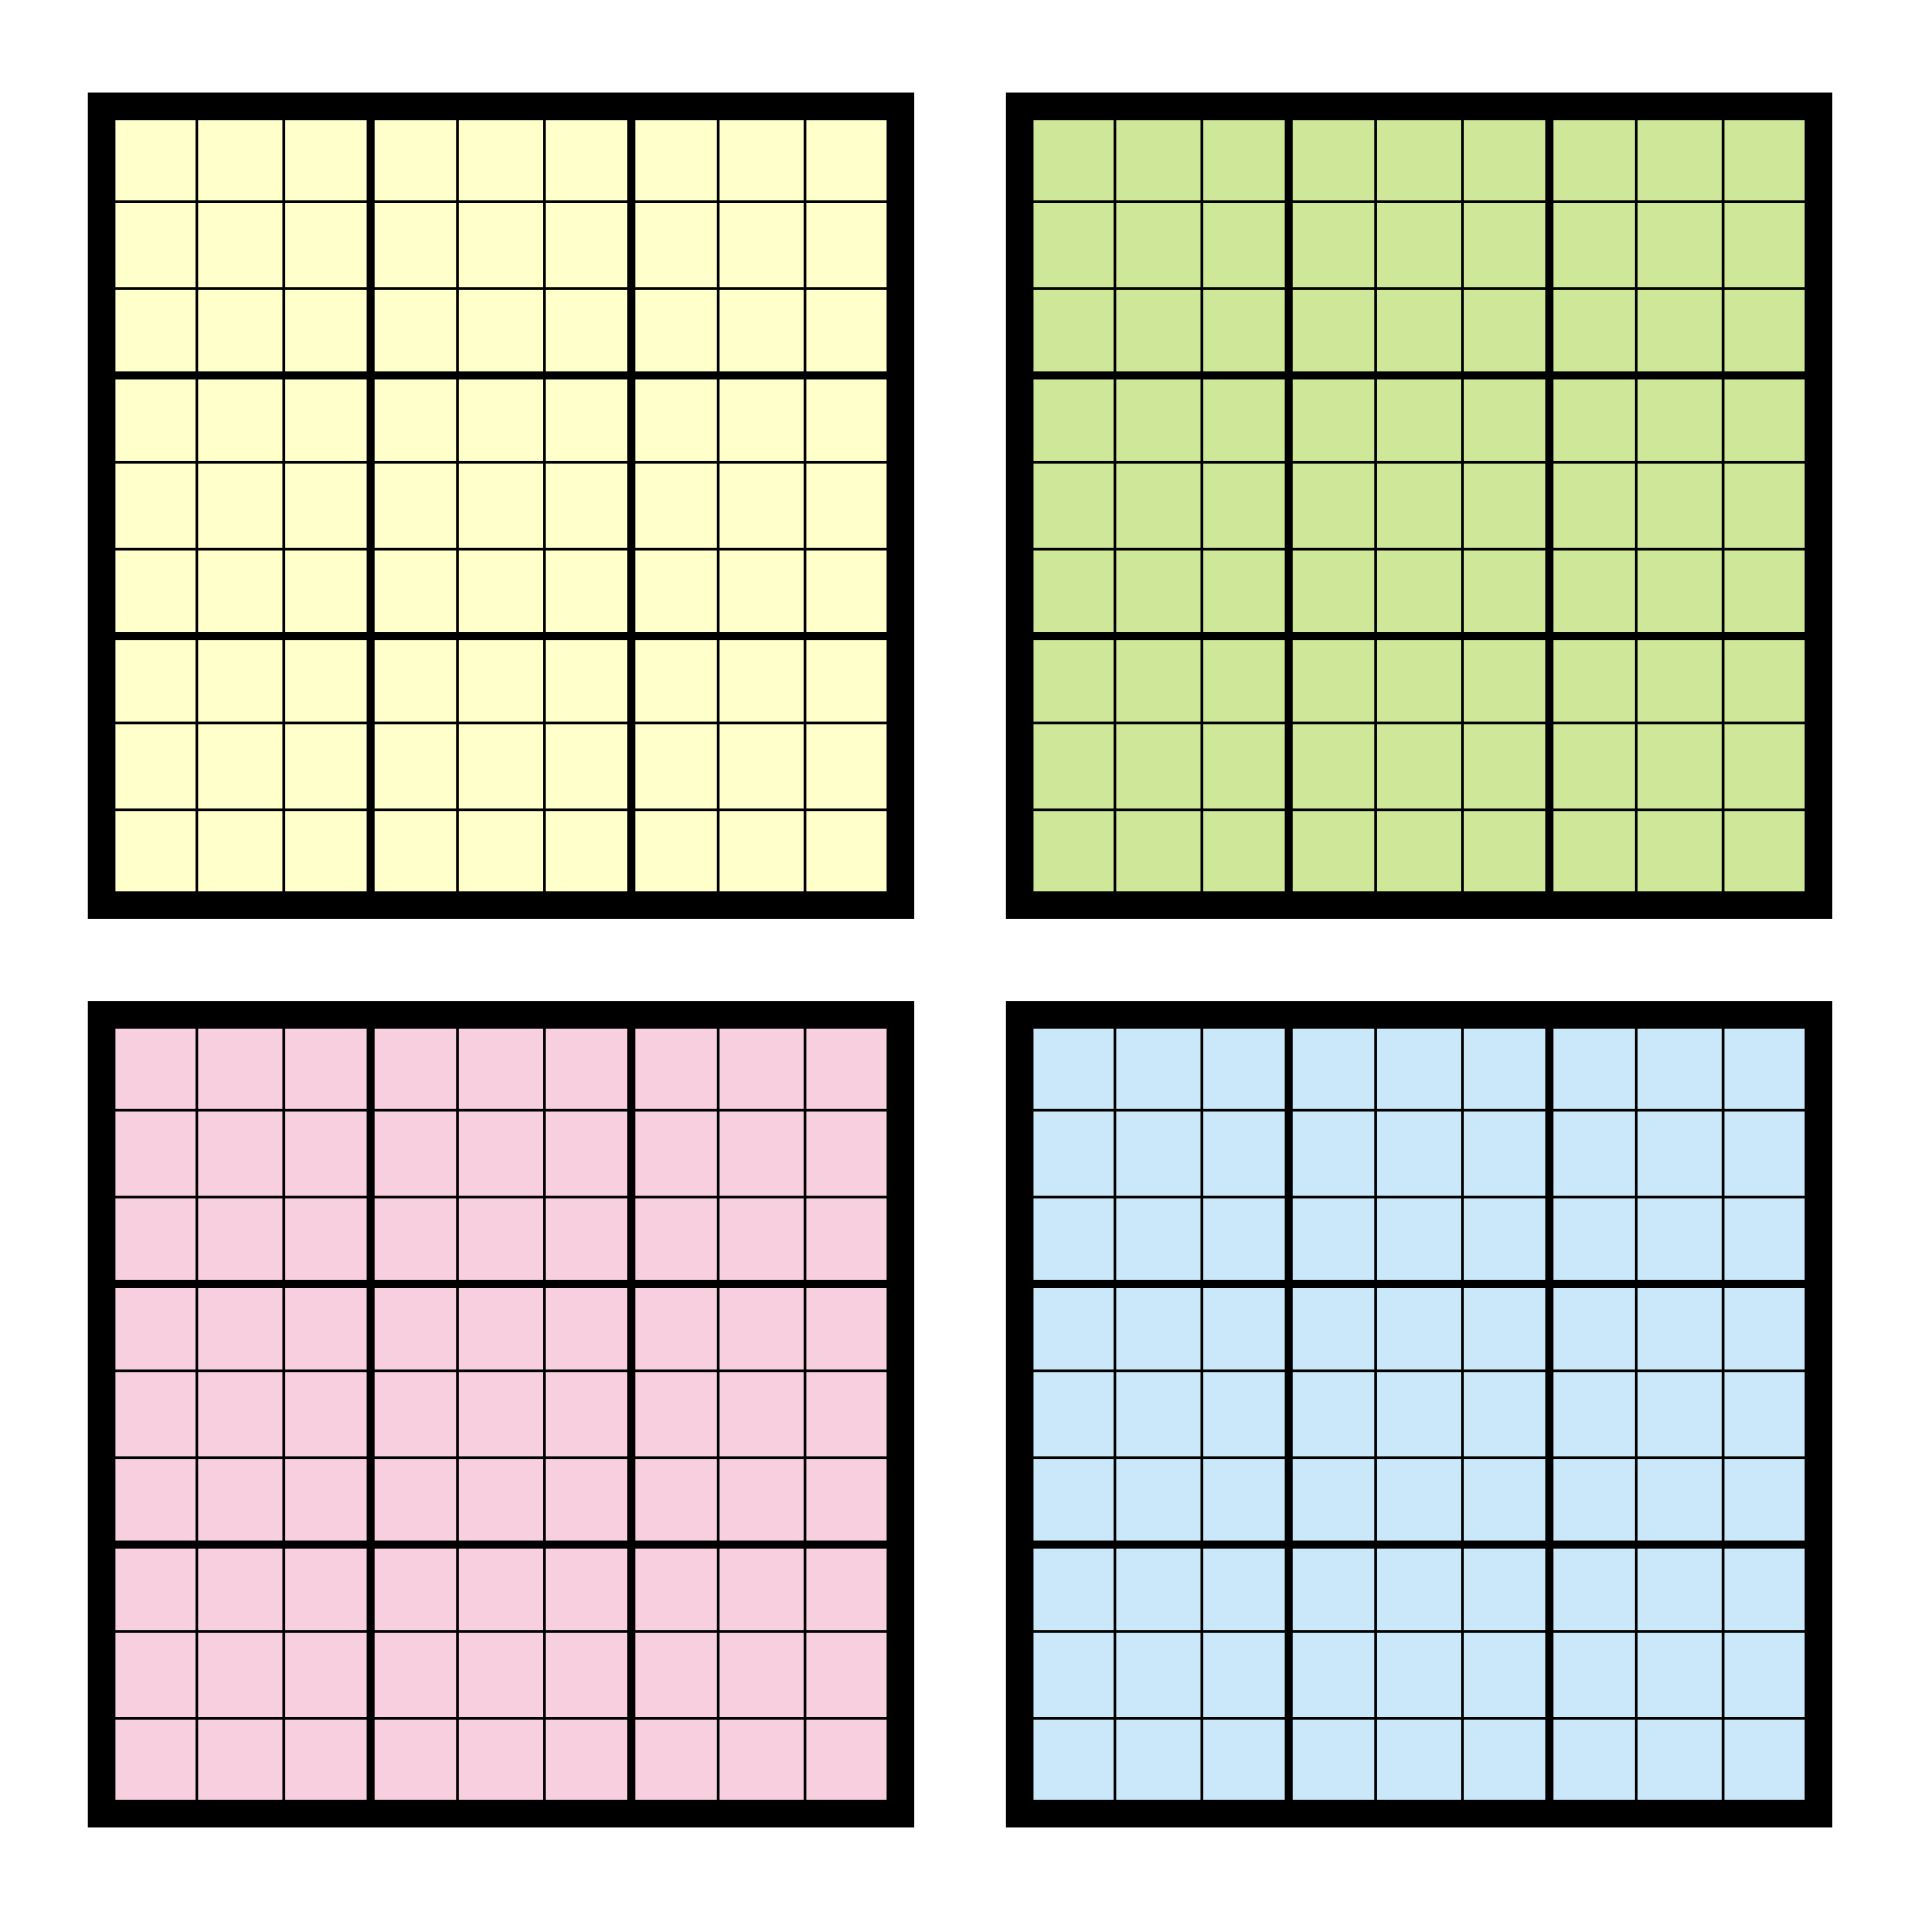 Printable Sudoku Grids Have Fun Anytime Printable Blank Sudoku 